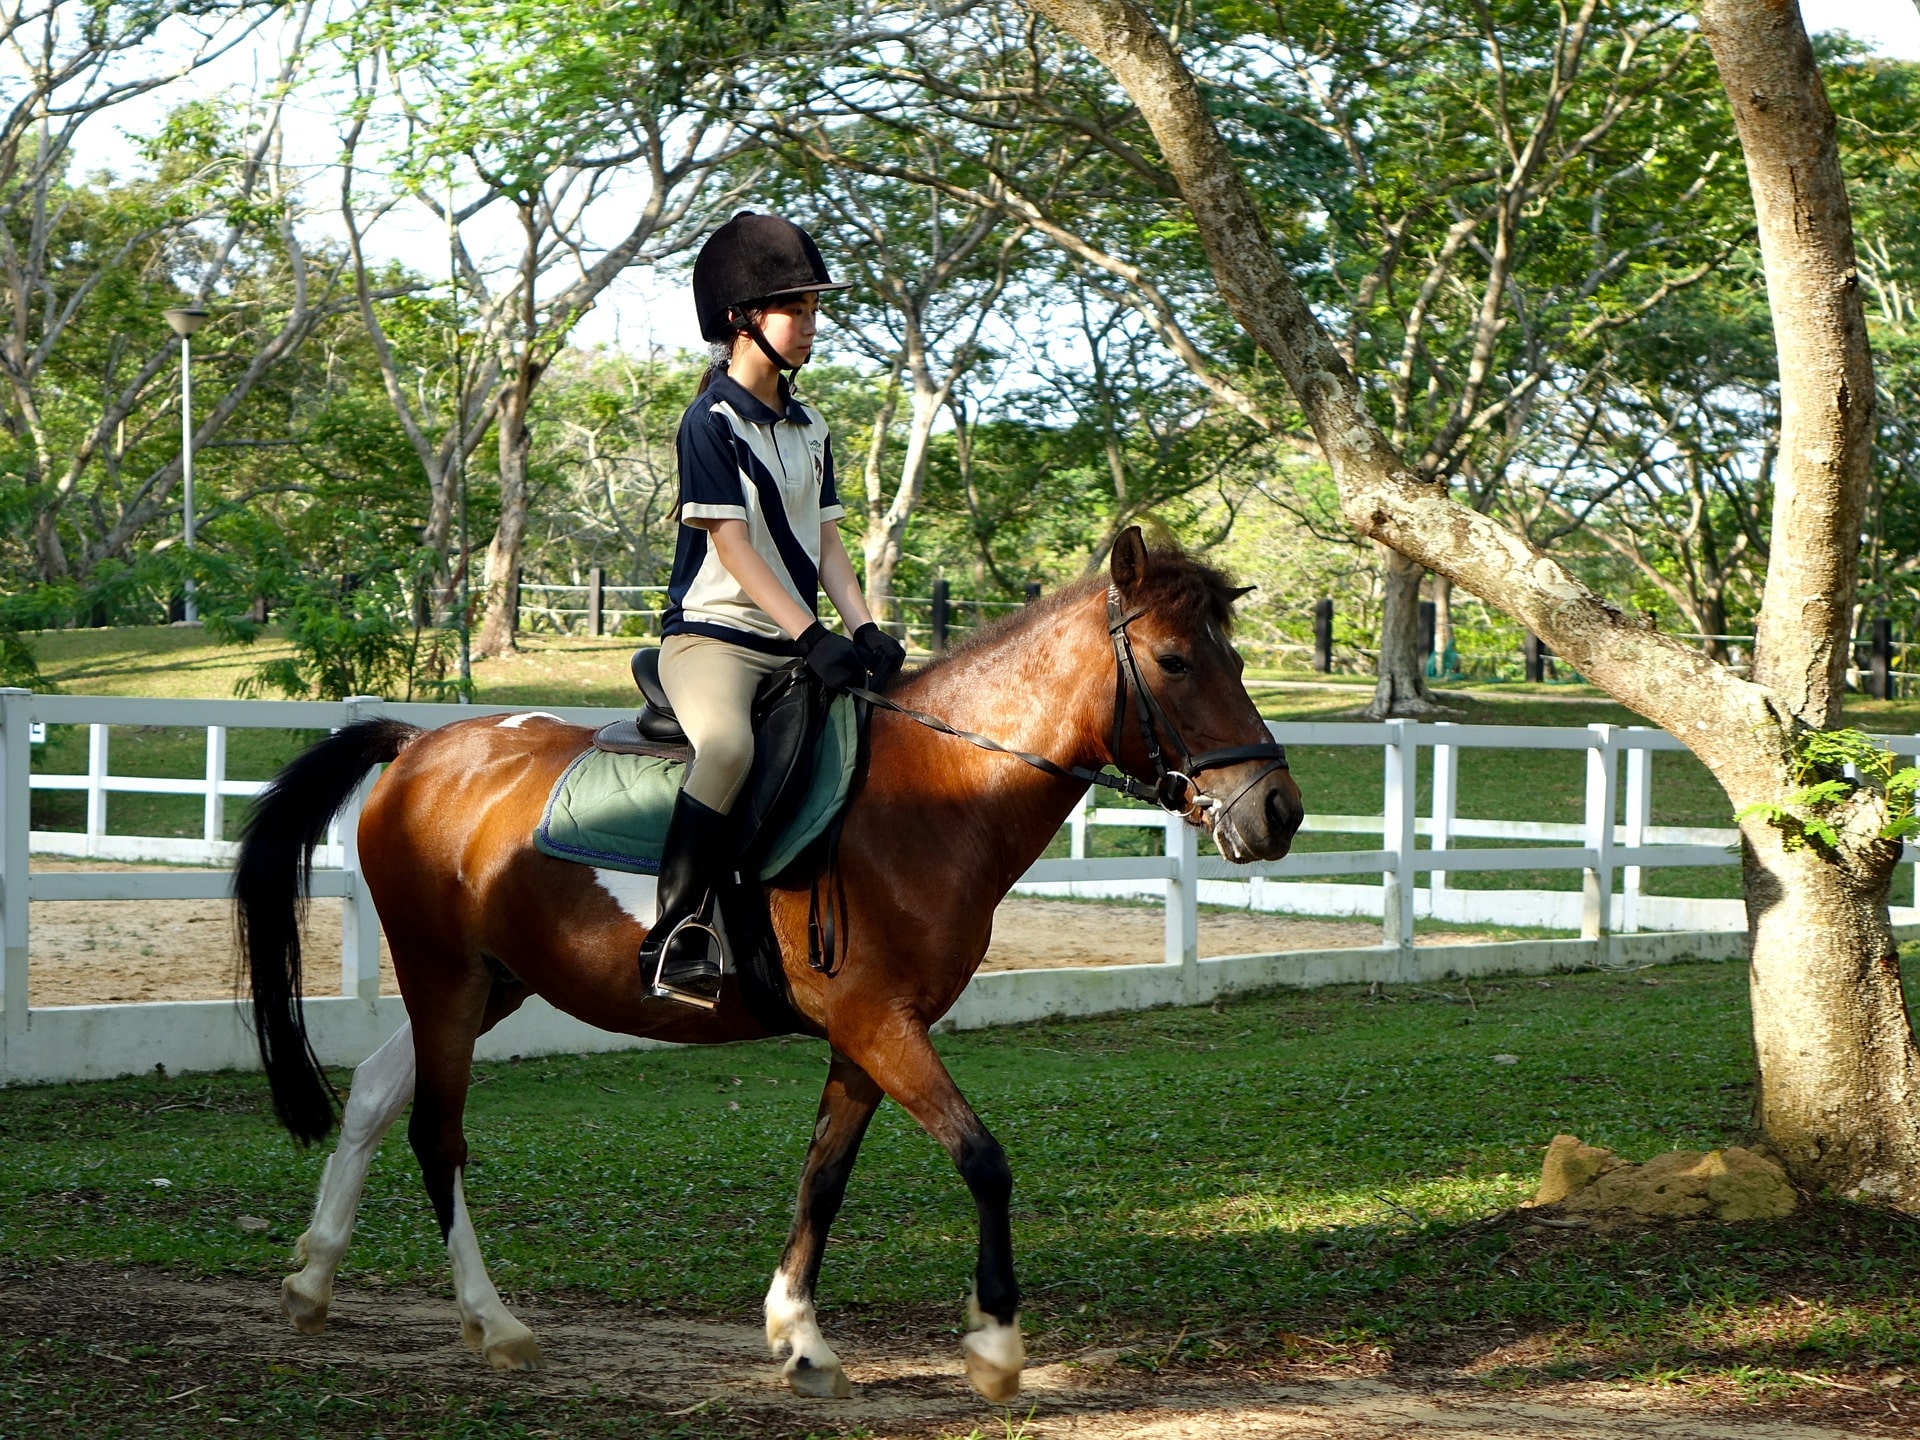 Horseback riding gear: English beginner